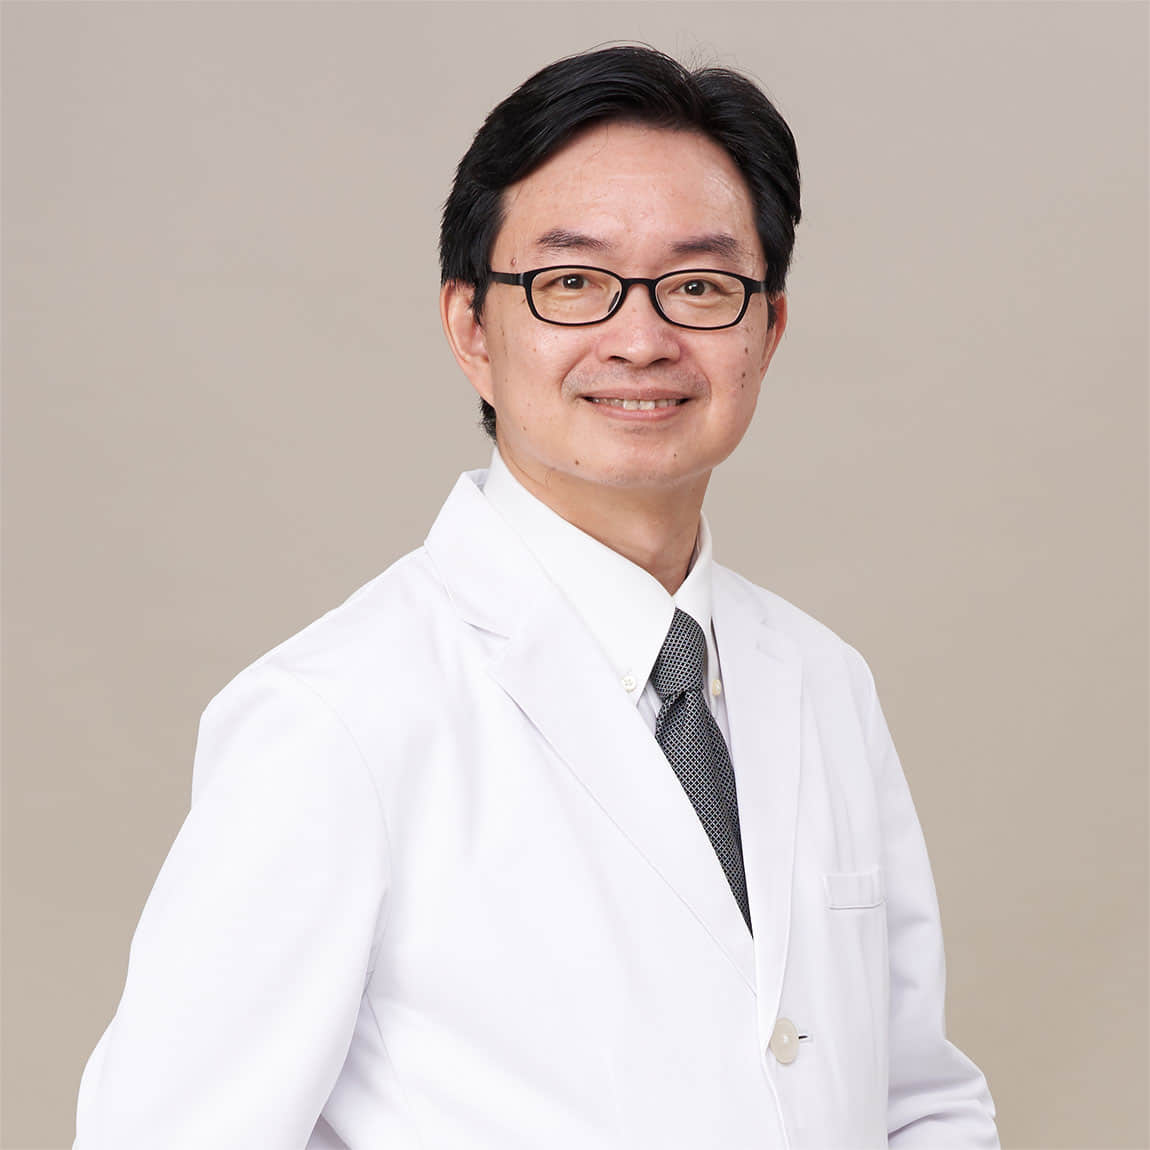 何彦秉 Jason Yen-Ping Ho, MD., 副院長.